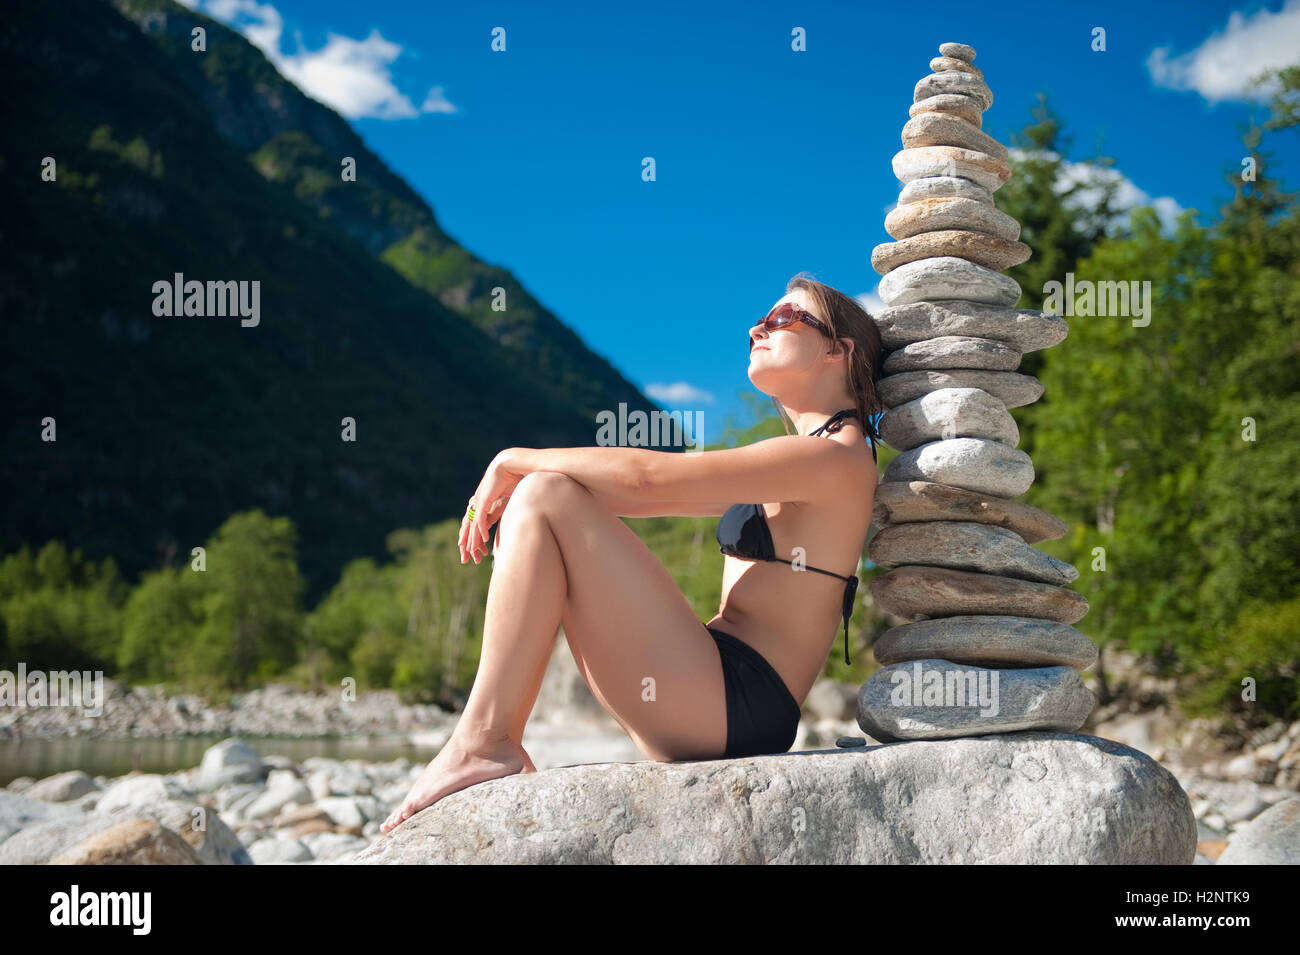 Woman in bikini next to a stone pyramid, Valle Verzasca, Tessin, Switzerland, Europe Stock Photo